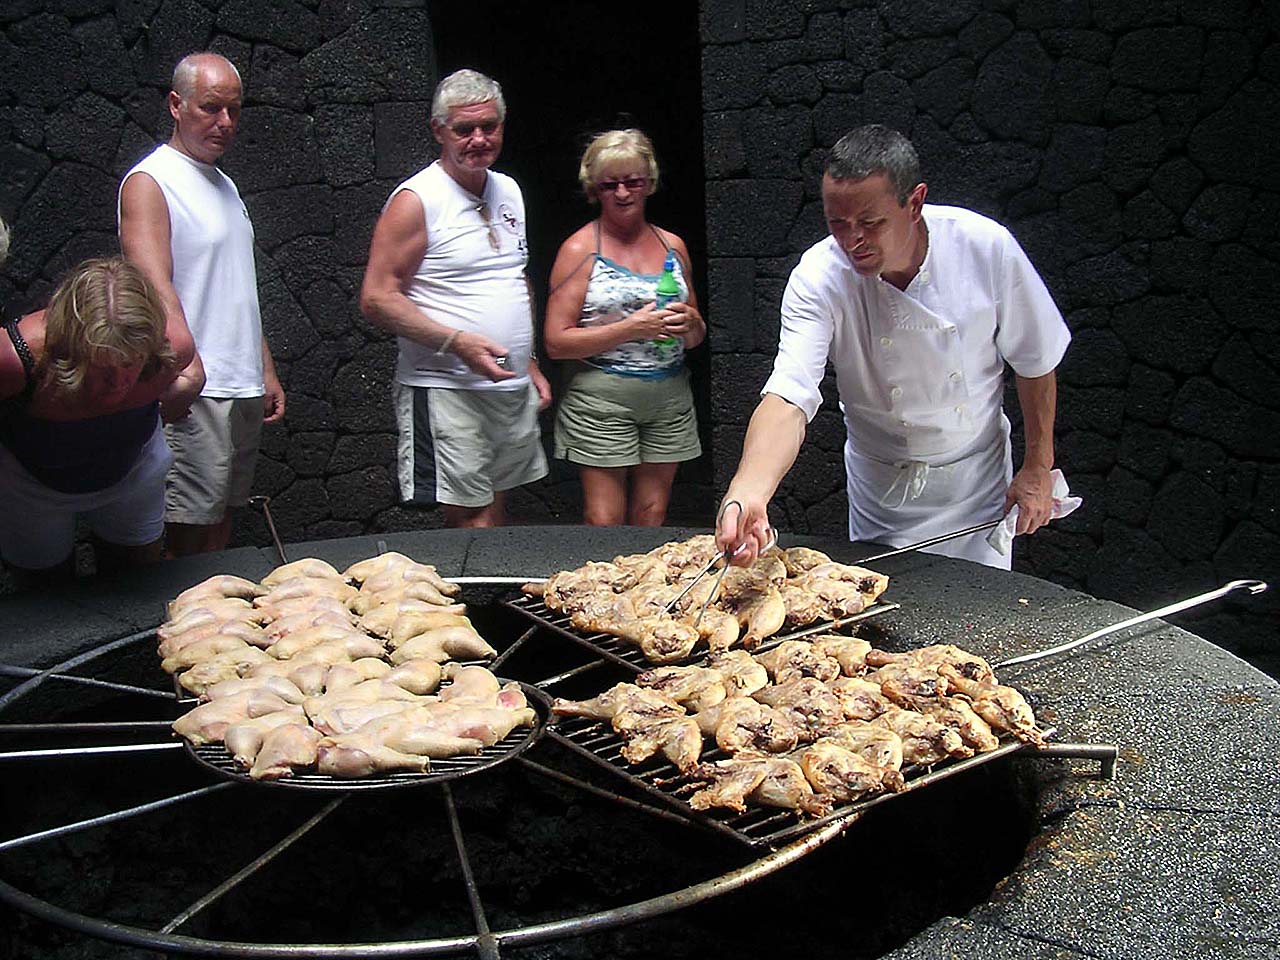 O cozinheiro prepara o frango na grelha sobre a brasa vulcânica - Foto: unfinishedman.com